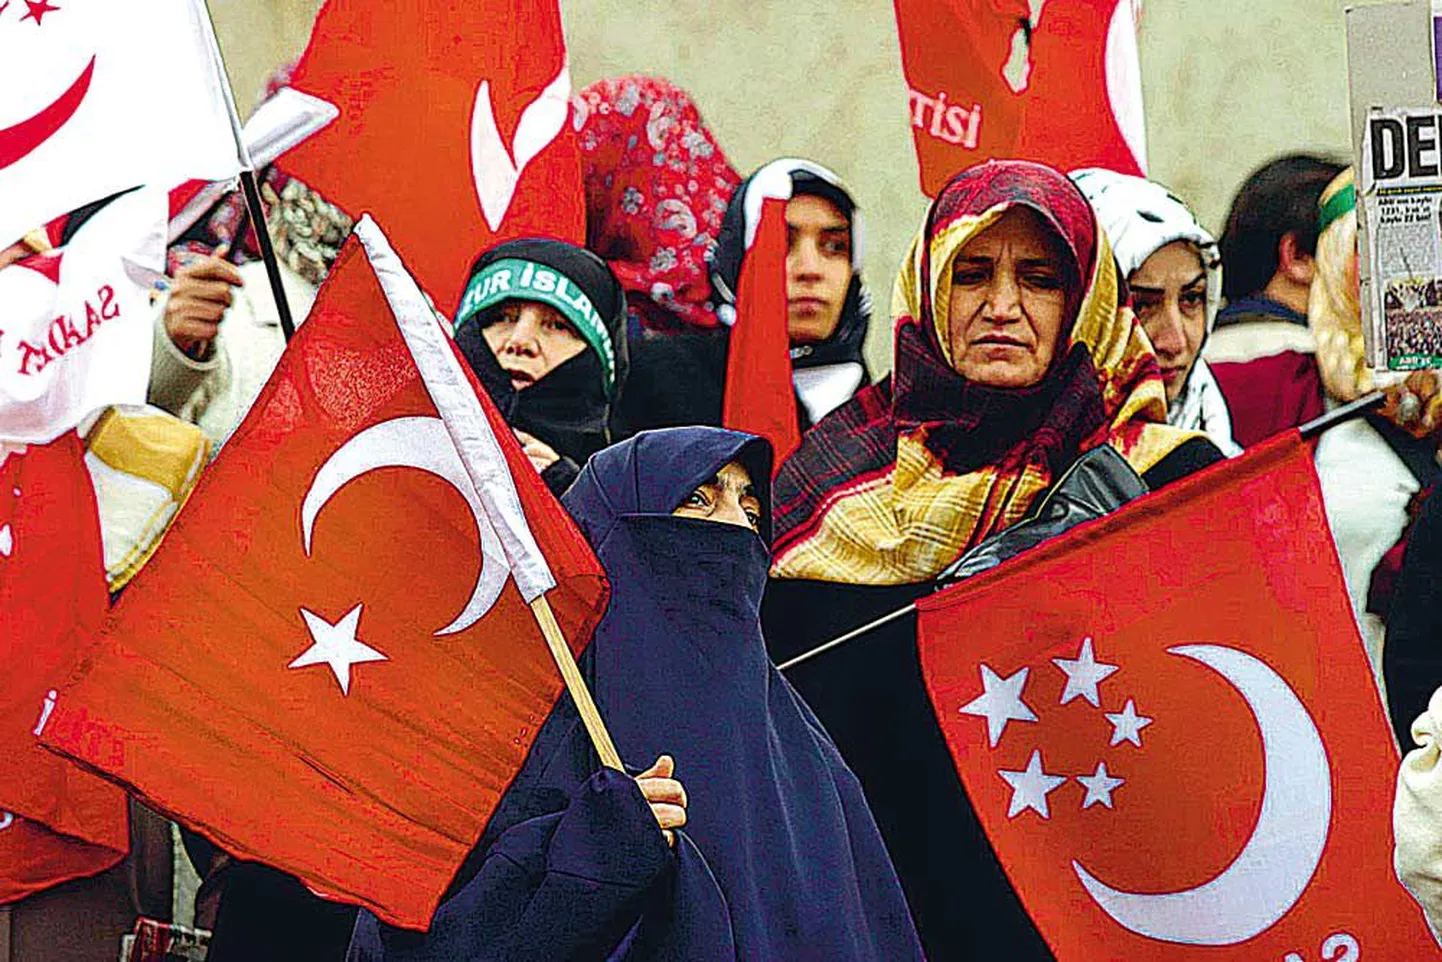 Kuigi Euroopa suurriigid on siiani Türgi Euroopa Liitu kaasamise osas skeptilised, võib Türgi koduvägivalla küüsis vaevlevatele naistele riigi euroliiduga ühinemine tähendada kammitsatest pääsemist.